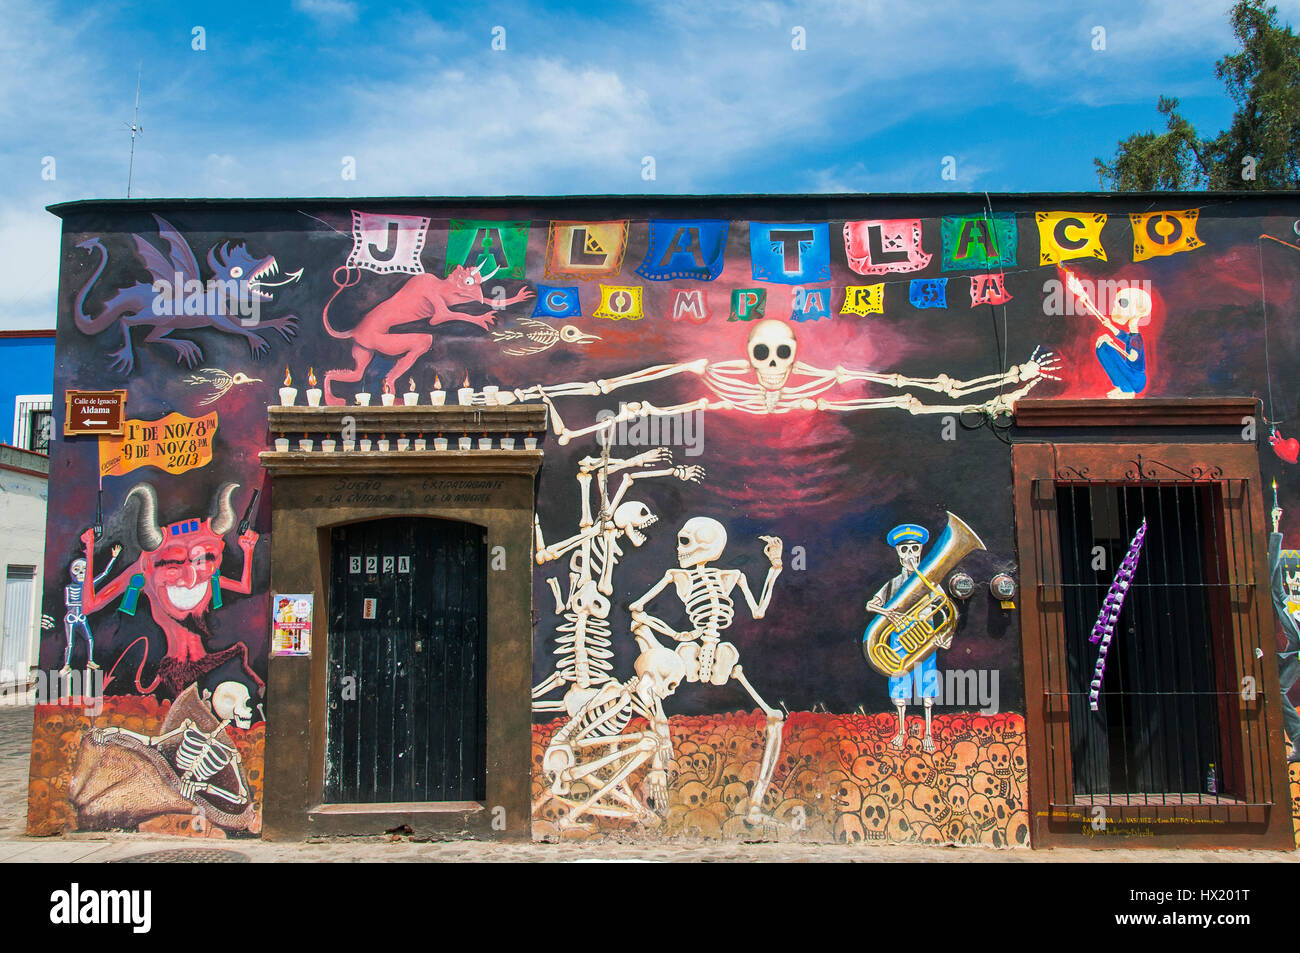 Murales, Wandgemälde mit Skeletten, mexikanischer Totenkult, Weltkulturerbe Oaxaca, Mexiko Stock Photo